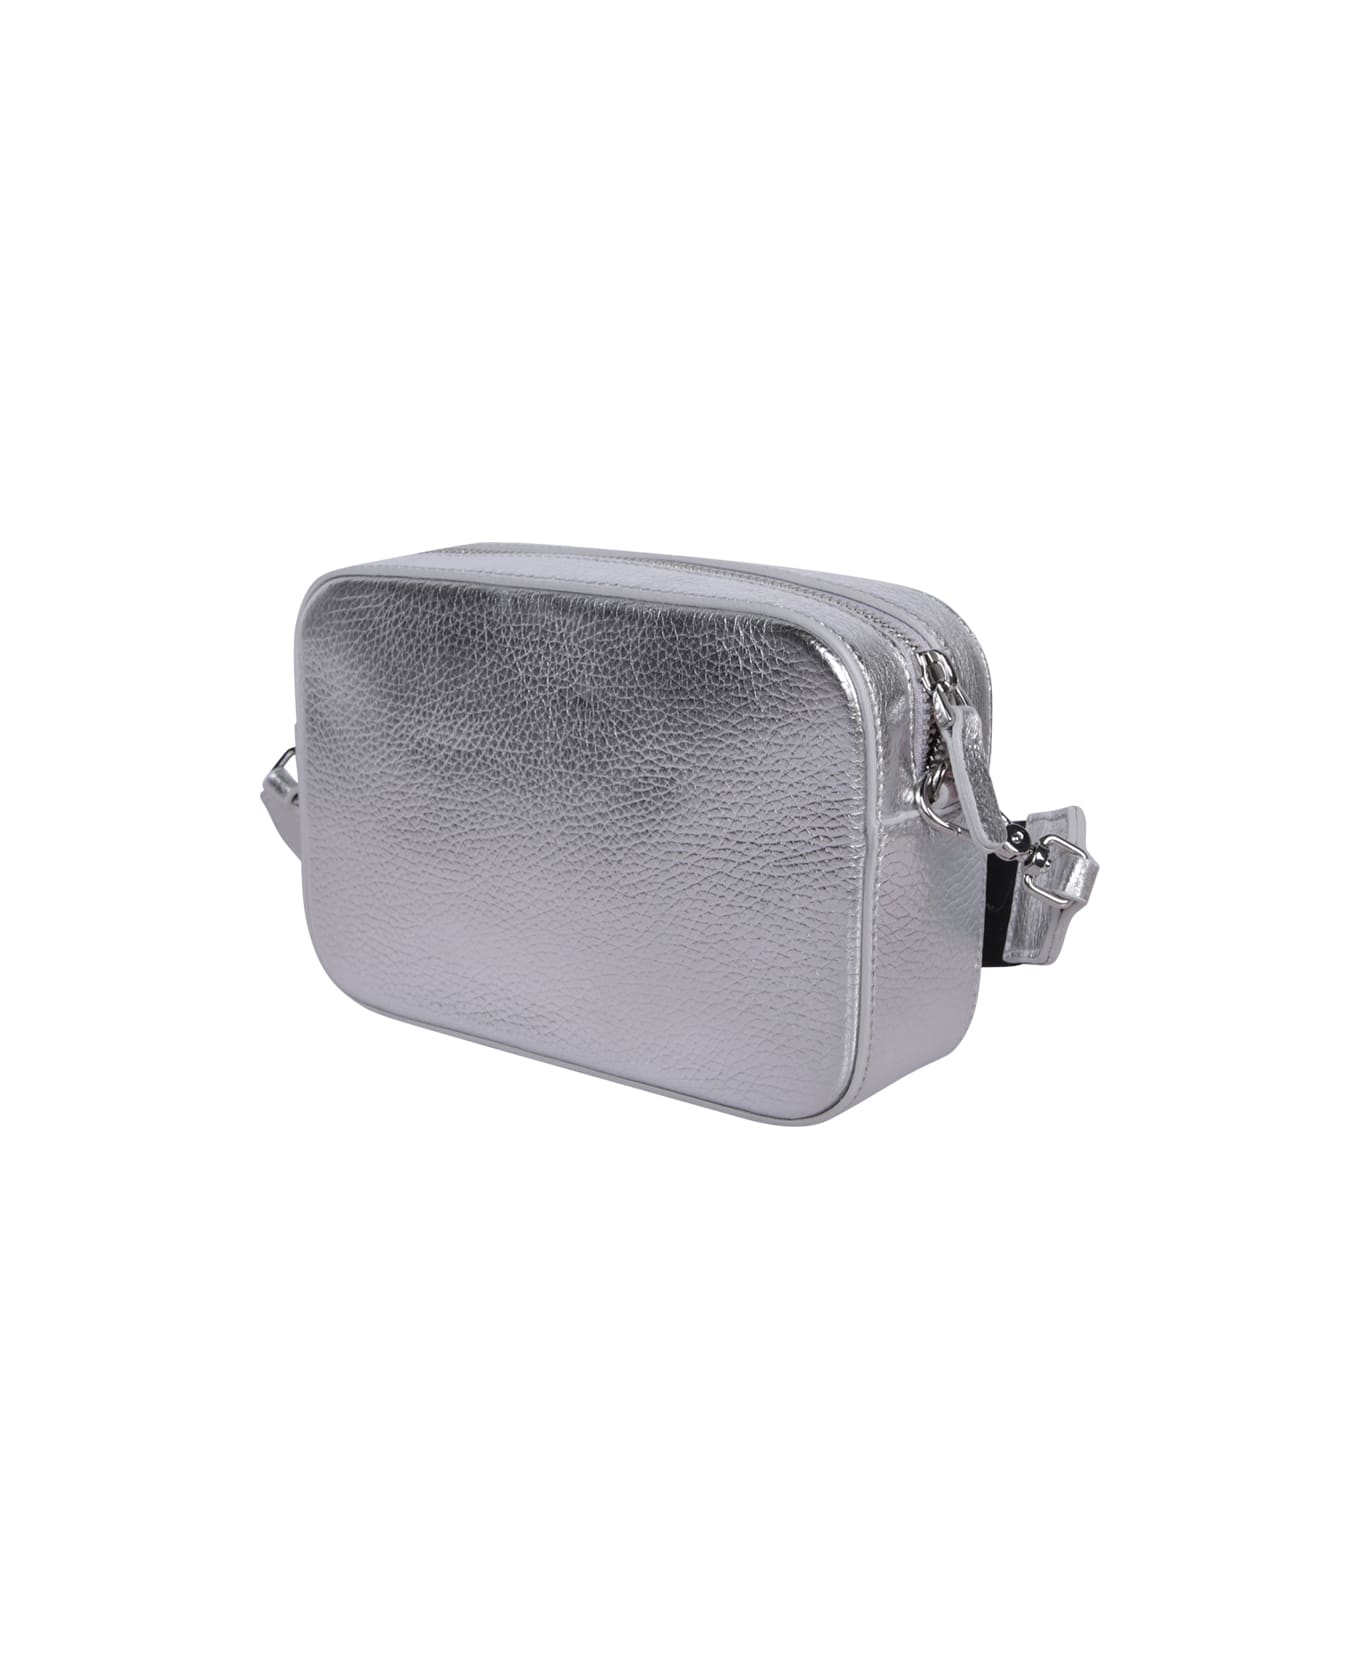 Coccinelle Silver Tebe Mini Bag - Metallic